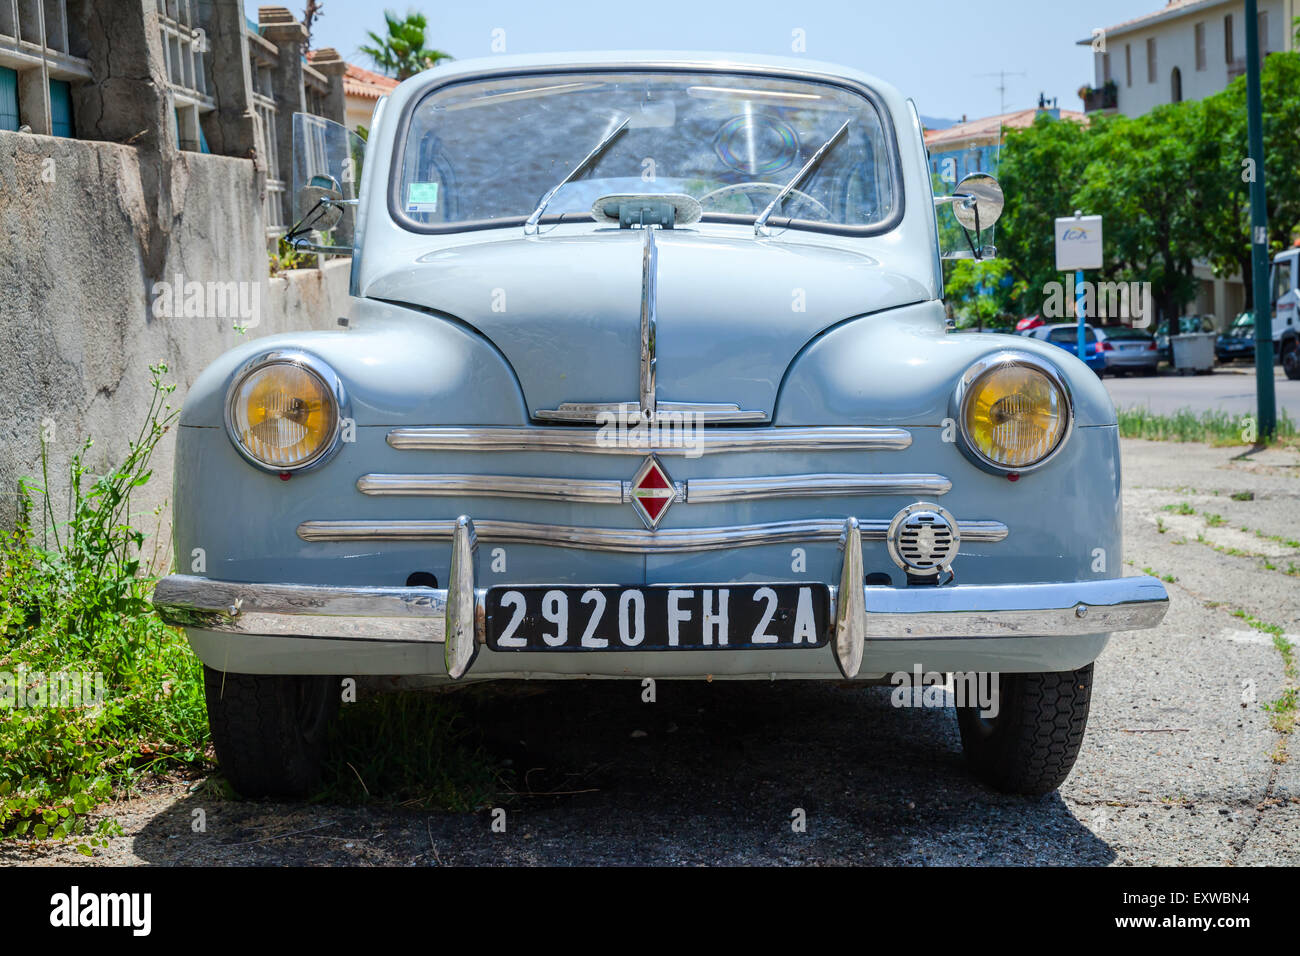 Ajaccio, Francia - luglio 6, 2015: Light blue Renault 4CV old-timer auto economia sta parcheggiato su una strada in città francese, anteriore v Foto Stock